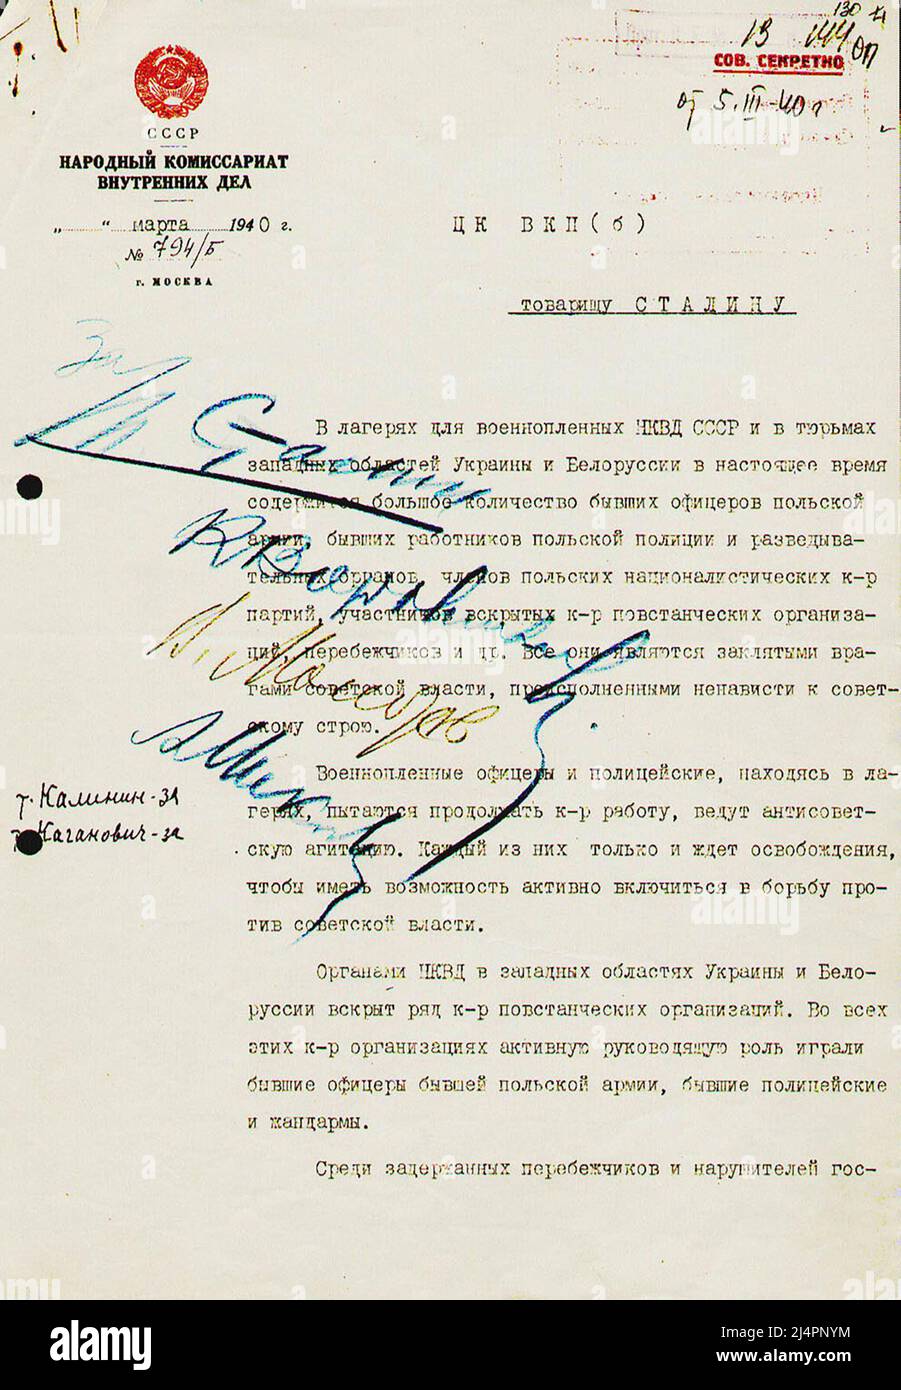 Das von Stalin, Woroschilow, Molotow und Mikojan genehmigte und gegenunterzeichnete Memo von Beria, in dem die Hinrichtung von 22.000 polnischen Offizieren und anderen Kriegsgefangenen im Katyn-Wald vorgeschlagen wird, ein Ereignis, das als Massaker von Katyn bekannt ist. Stockfoto